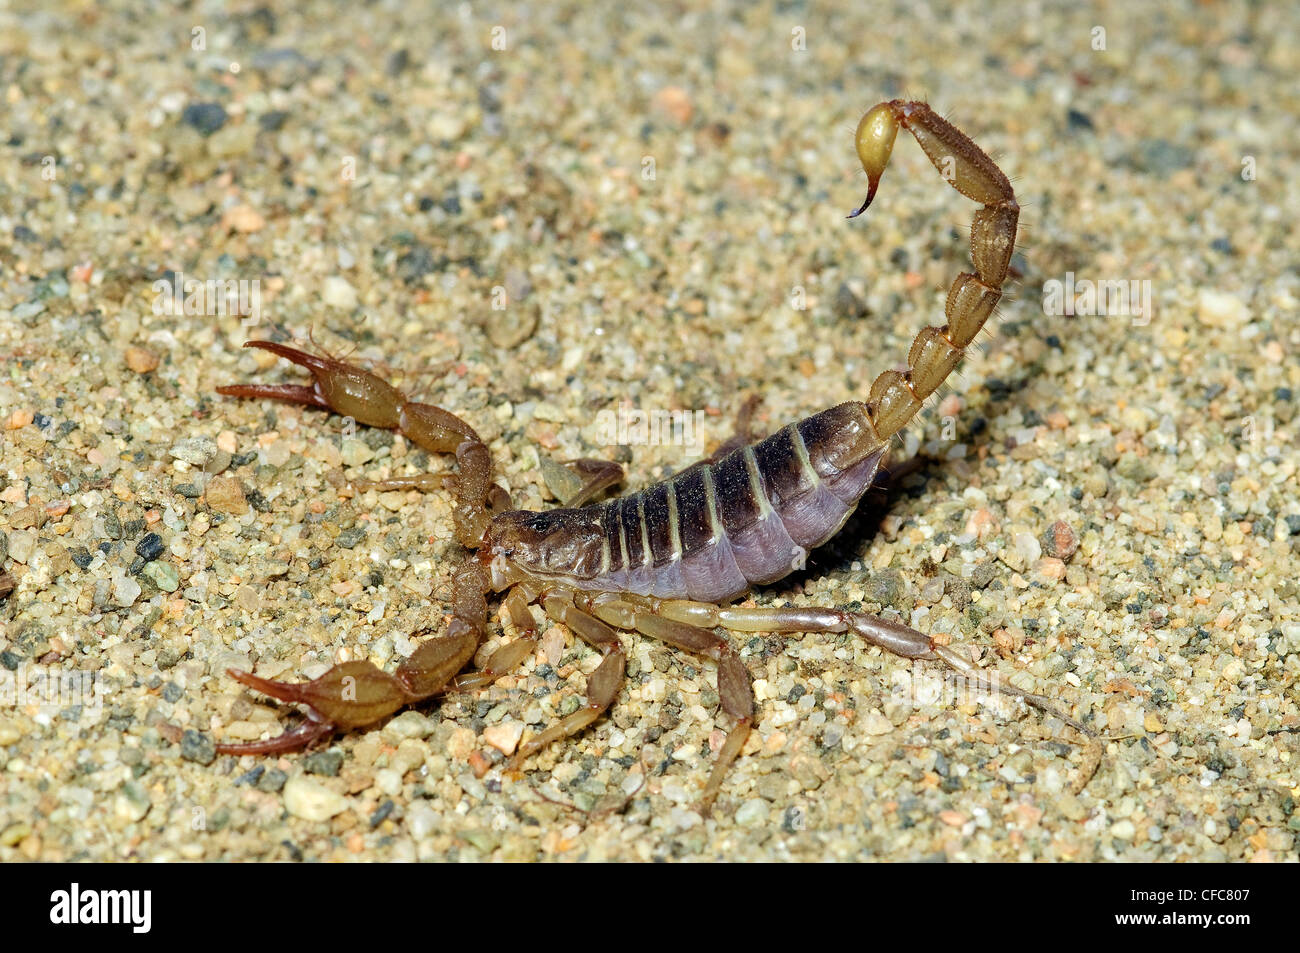 Scorpione settentrionale (Paruroctonus boreus) in posizione difensiva, southern Okanagan Valley, British Columbia Foto Stock